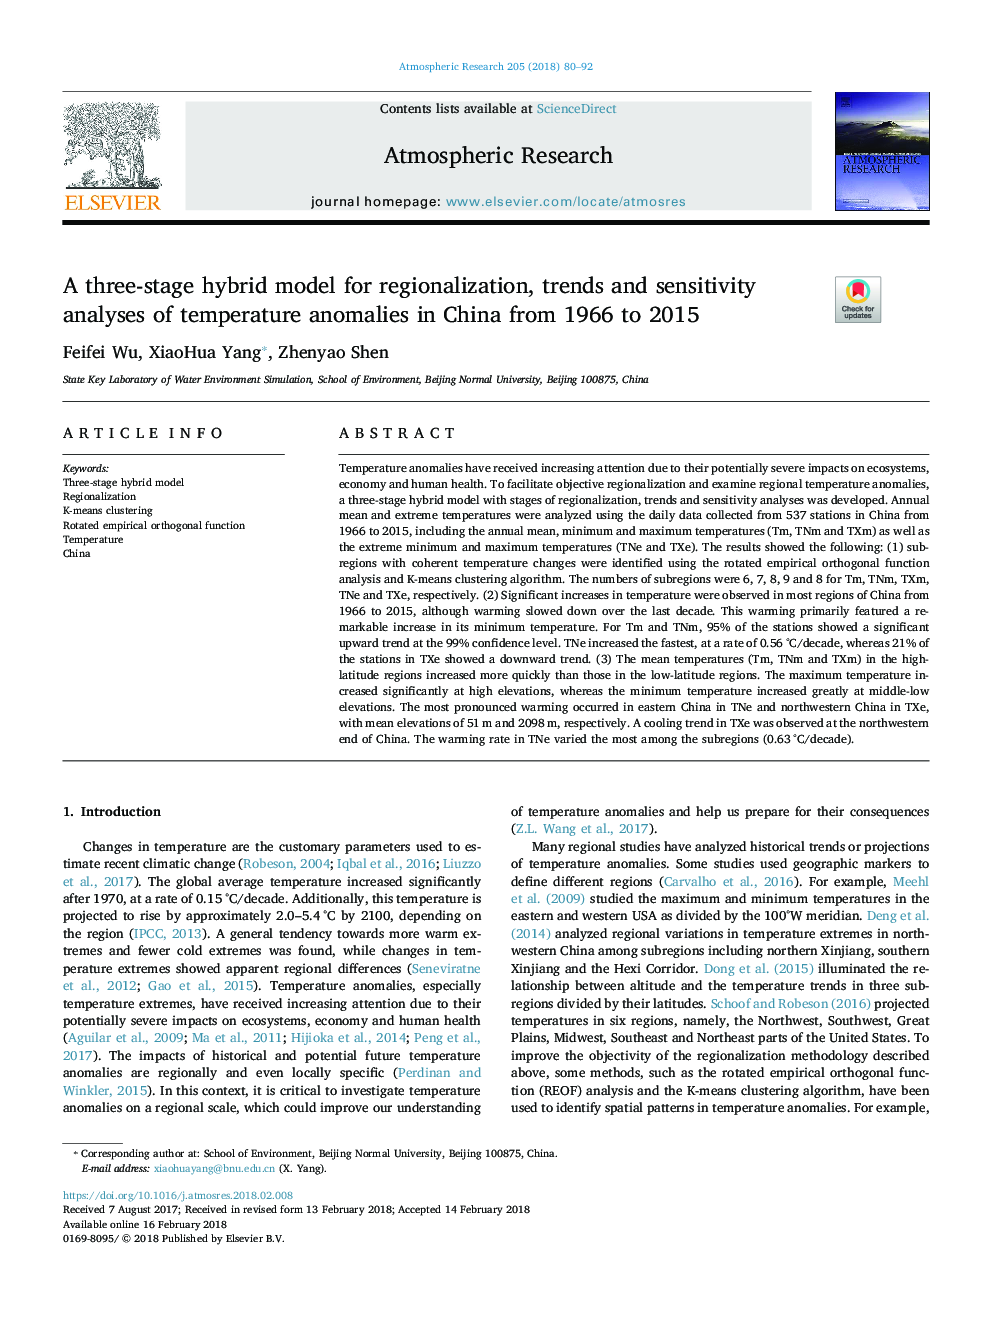 یک مدل ترکیبی سه مرحله ای برای منطقه سازی، روند و حساسیت تجزیه و تحلیل ناهنجاری های درجه حرارت در چین از سال 1966 تا 2015 